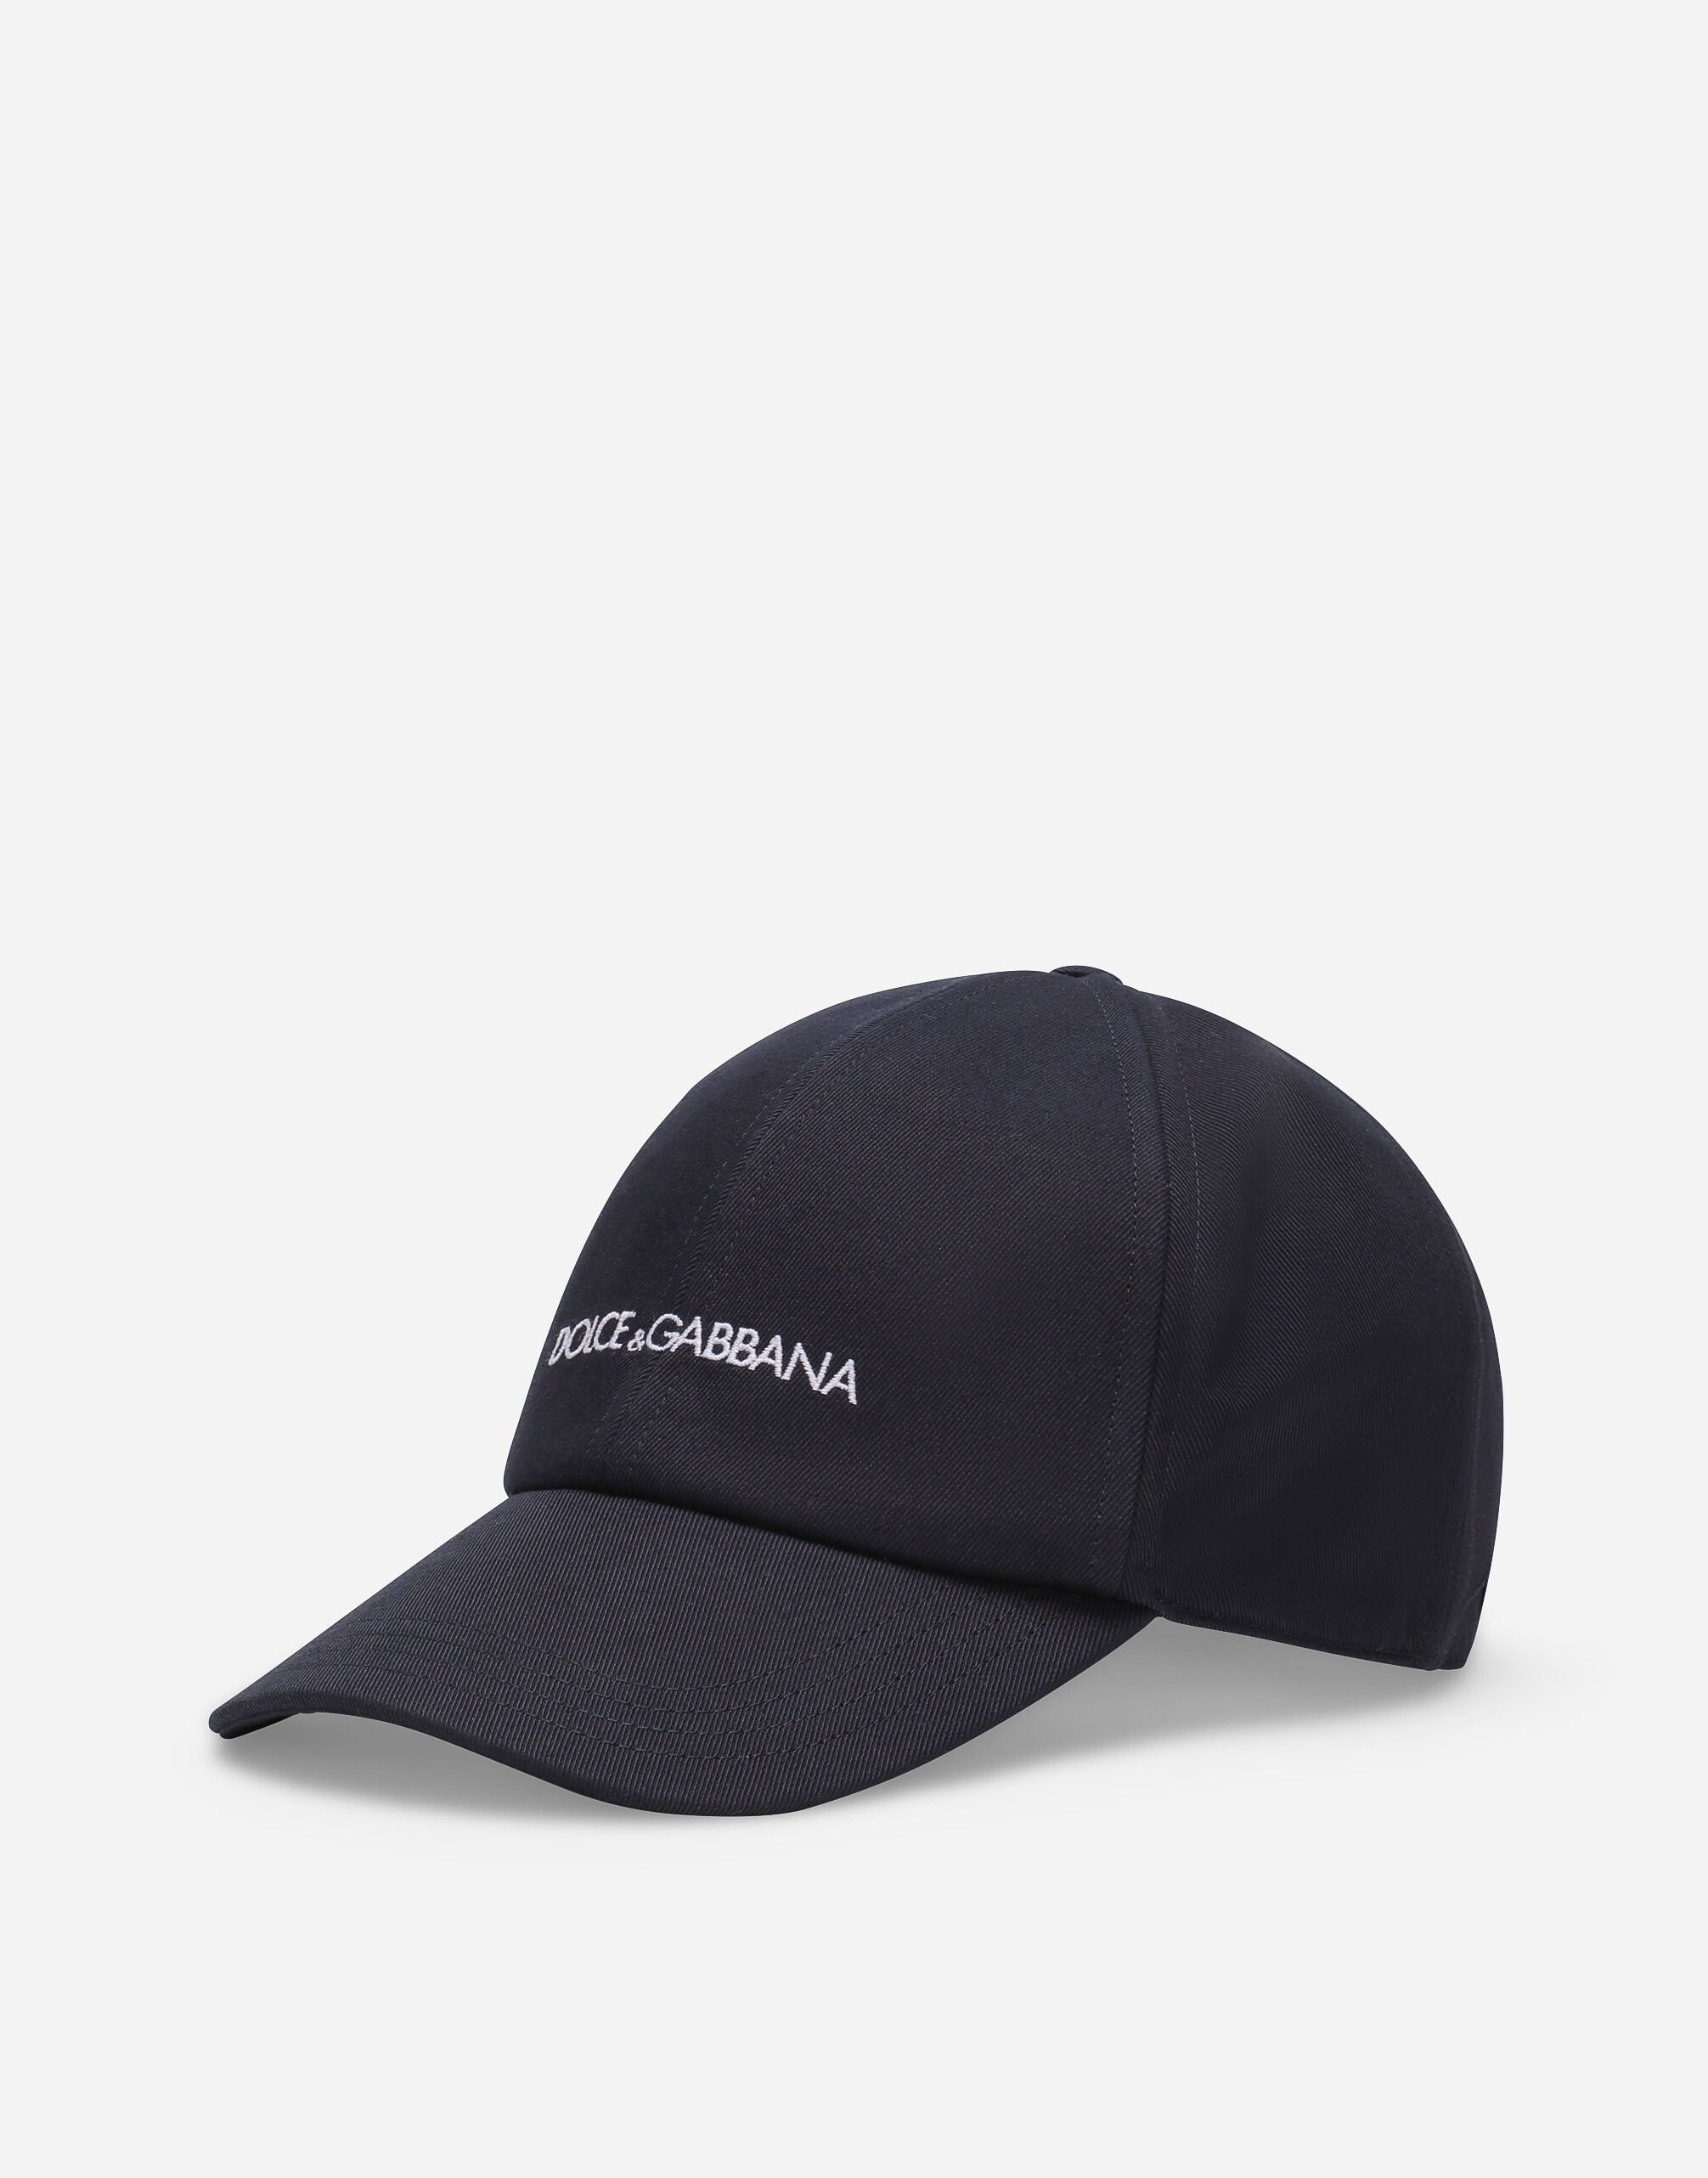 Cotton baseball cap with Dolce&Gabbana logo - 1